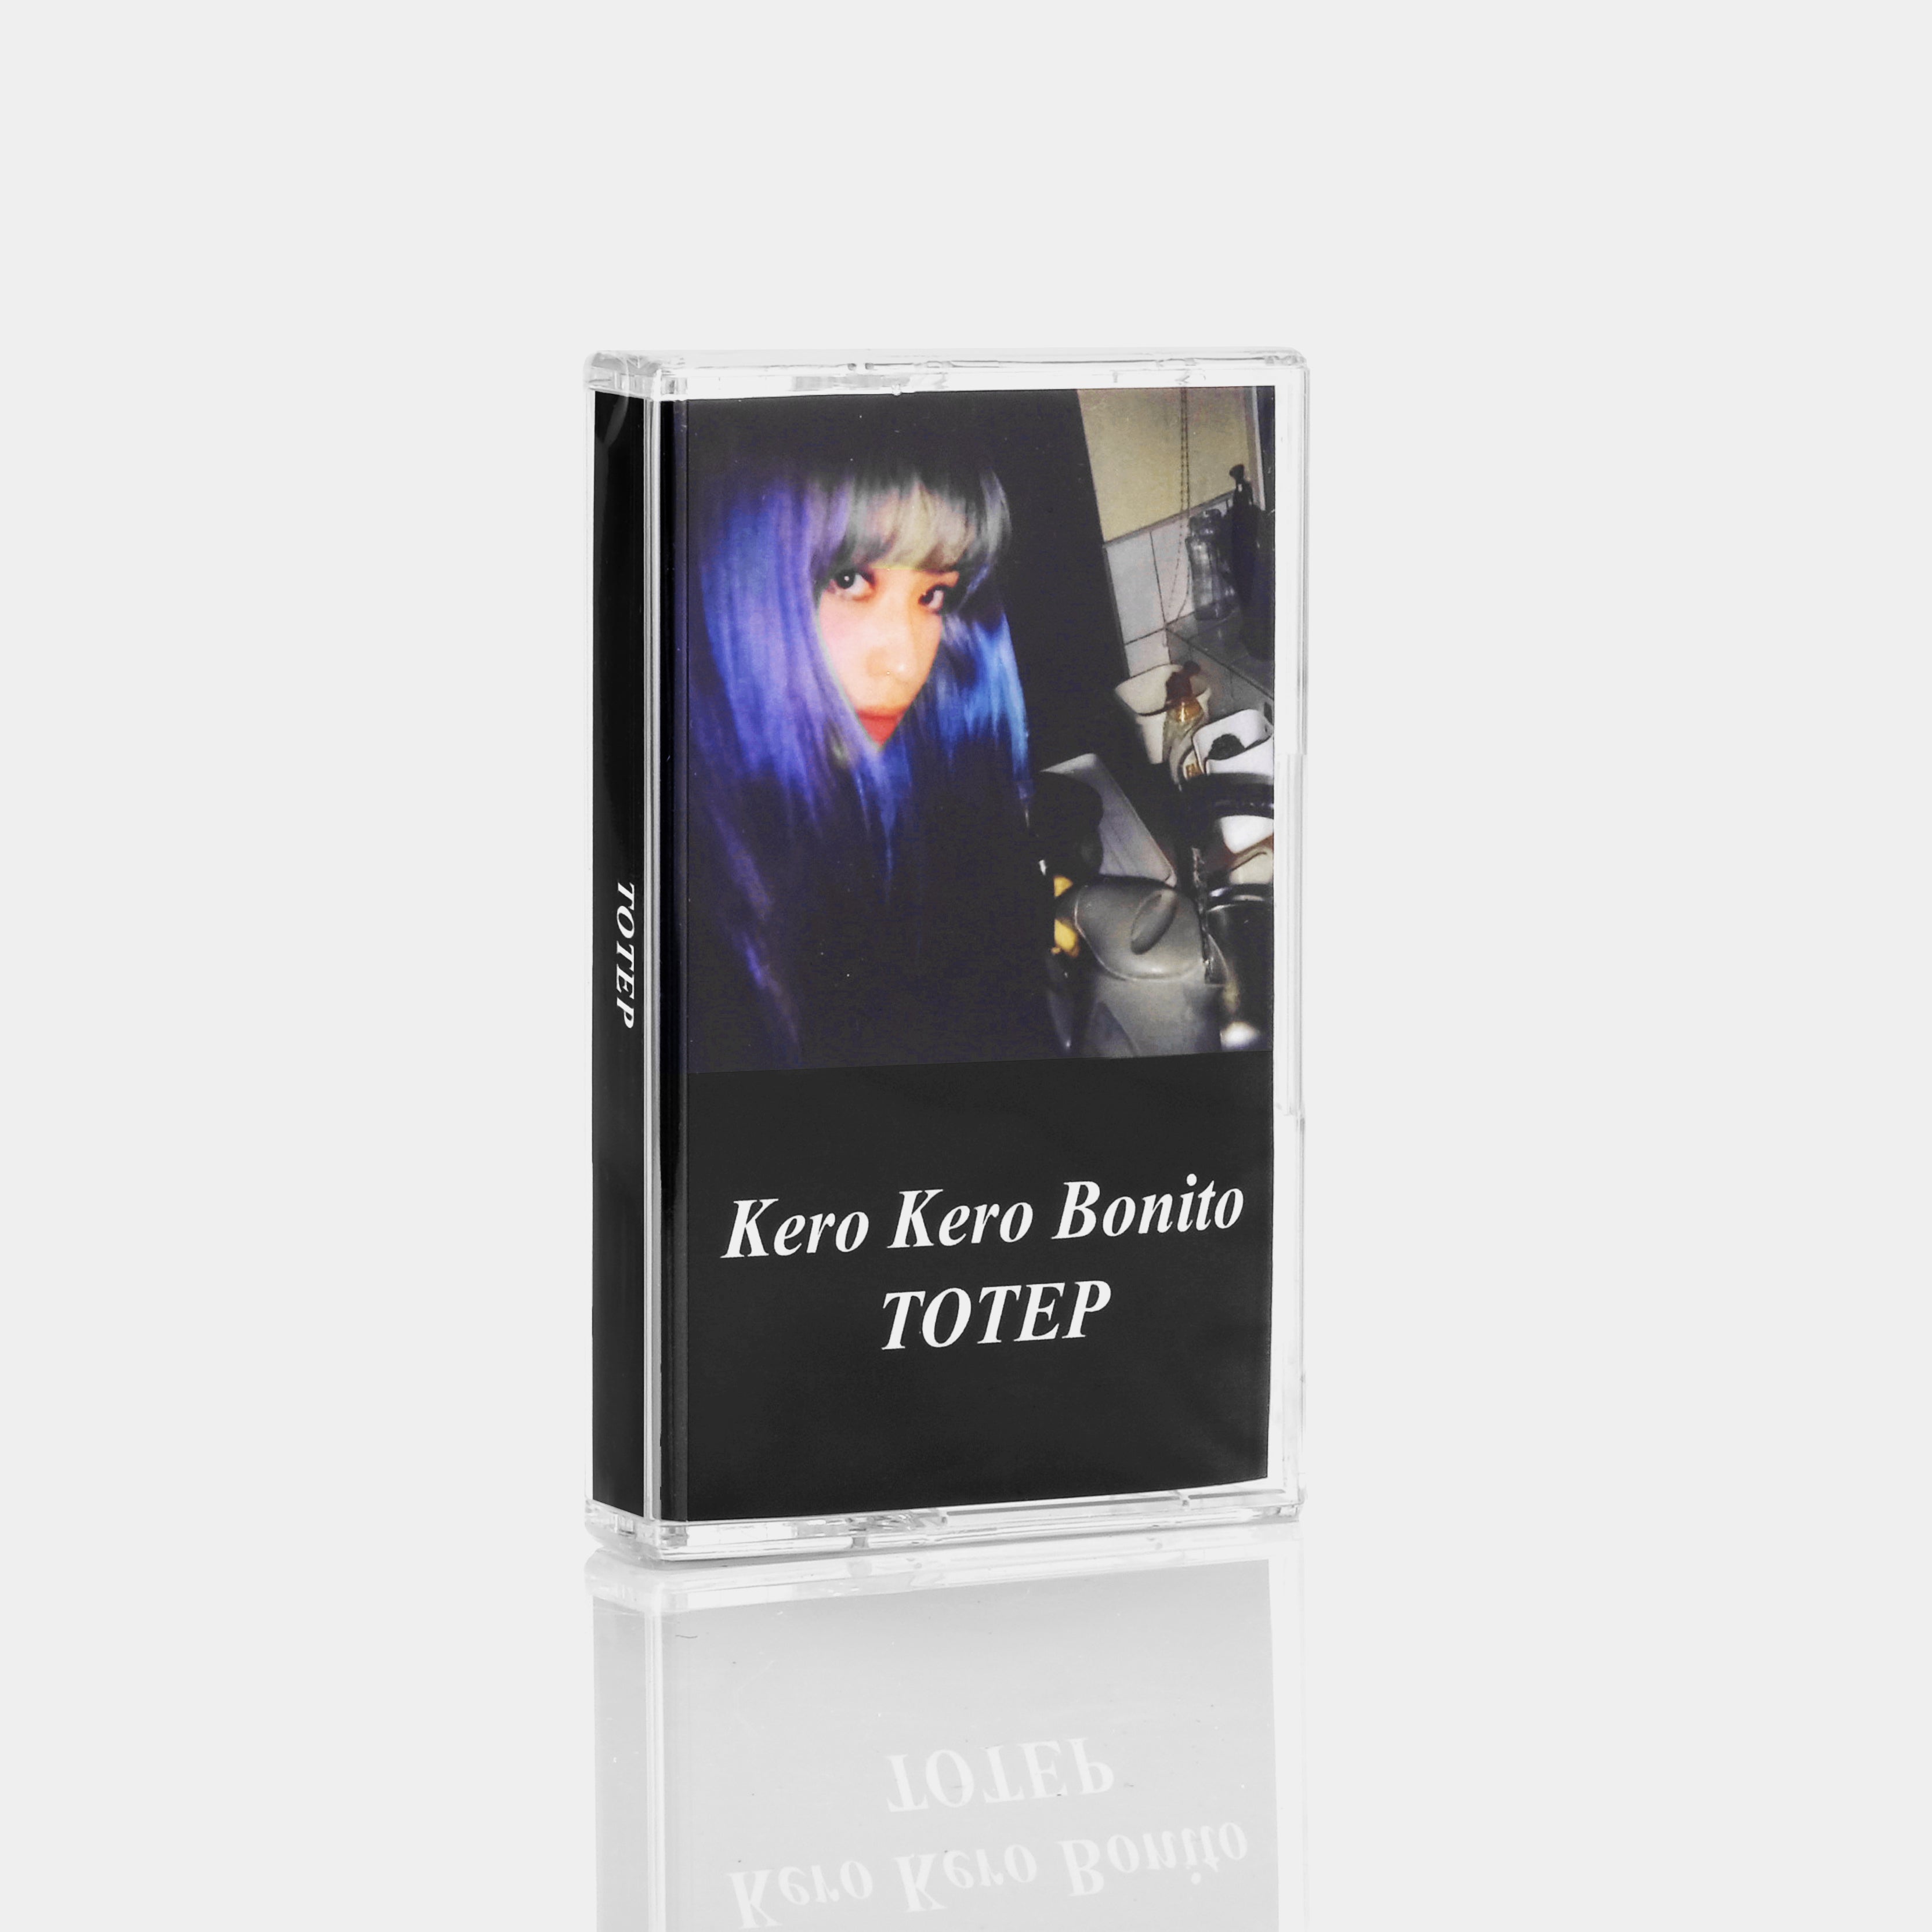 Kero Kero Bonito - Totep Cassette Tape